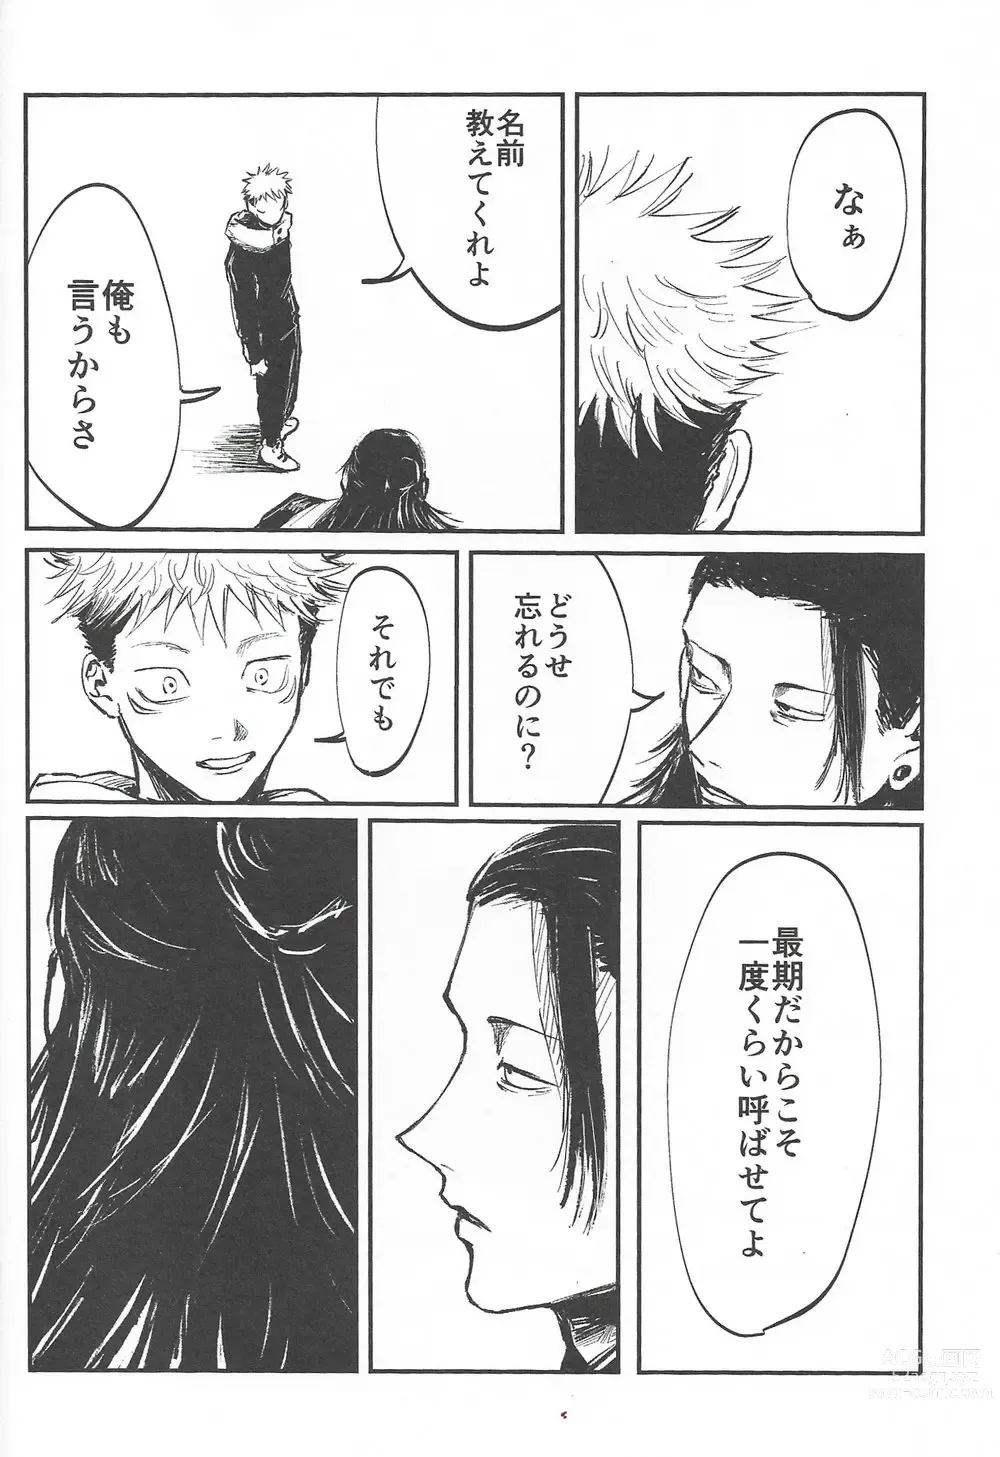 Page 30 of doujinshi Rakuen no Niwa